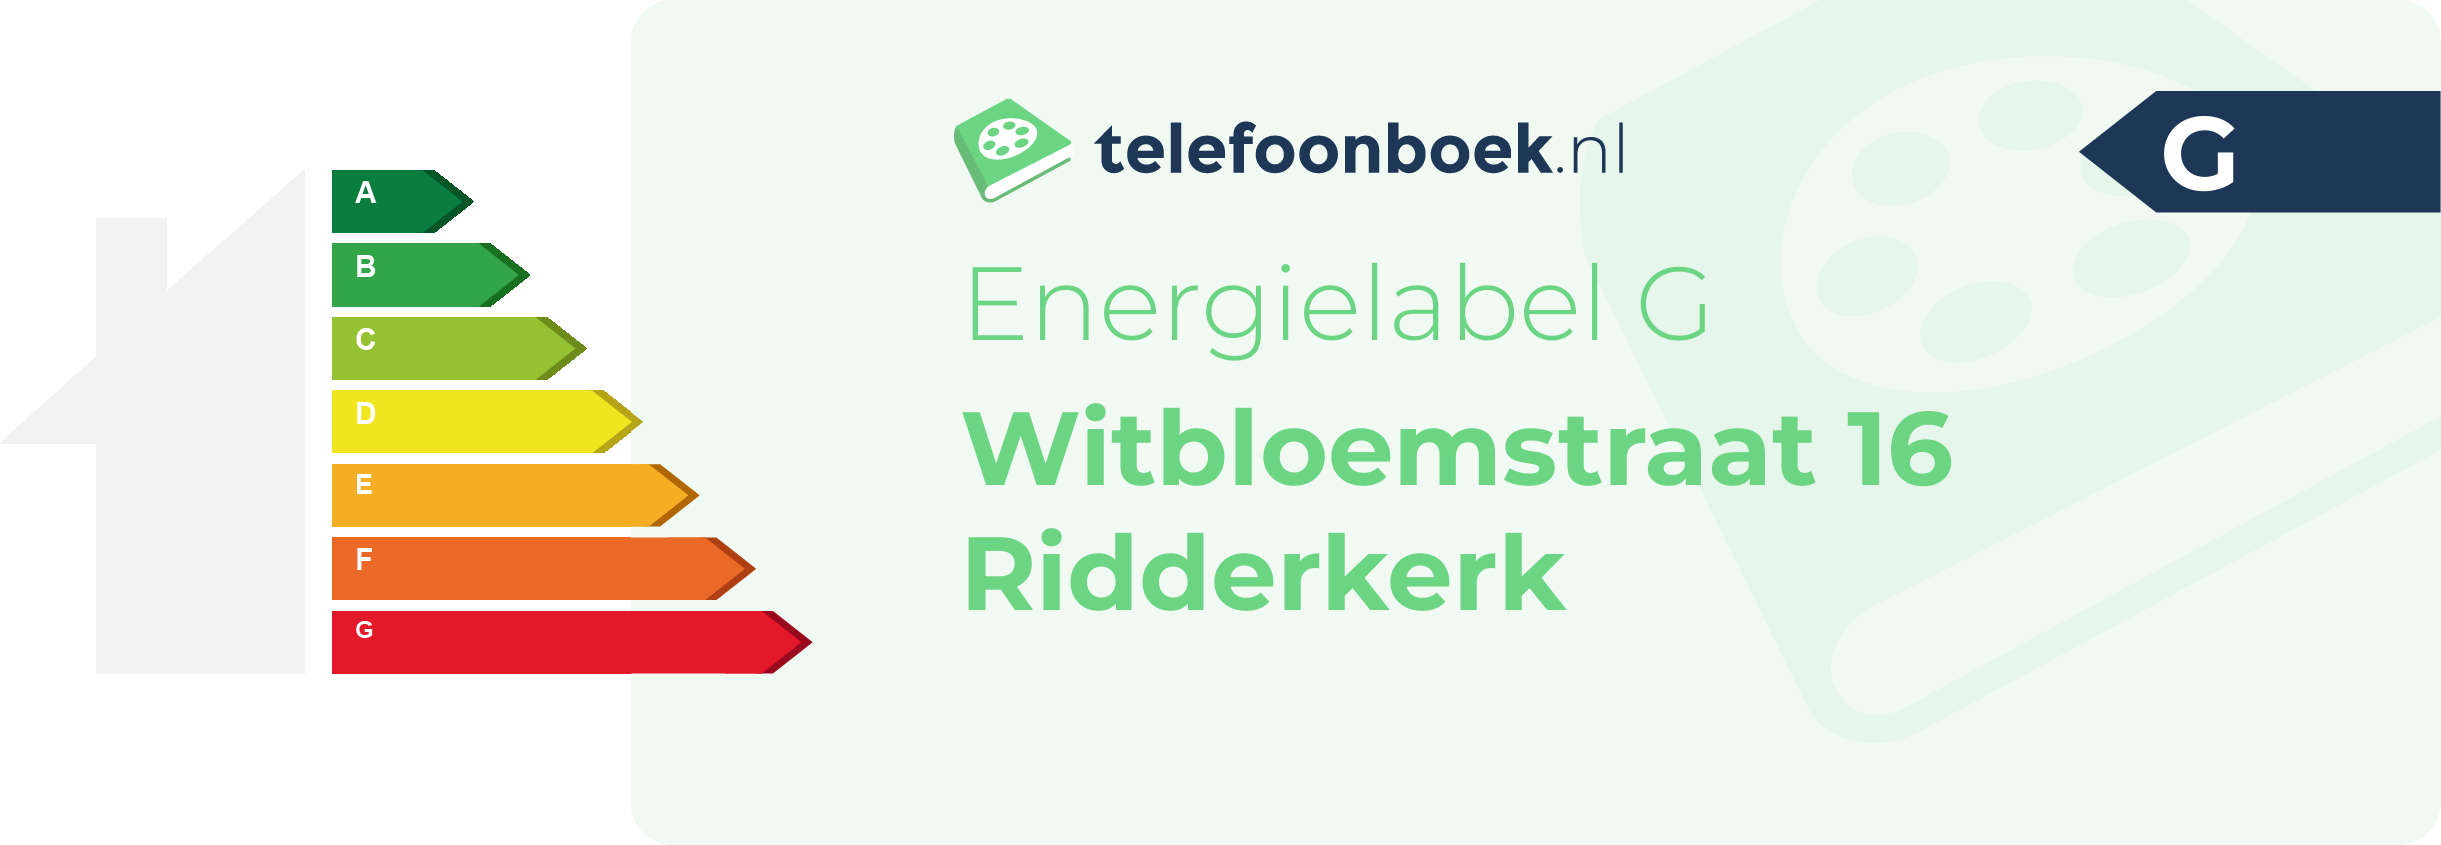 Energielabel Witbloemstraat 16 Ridderkerk